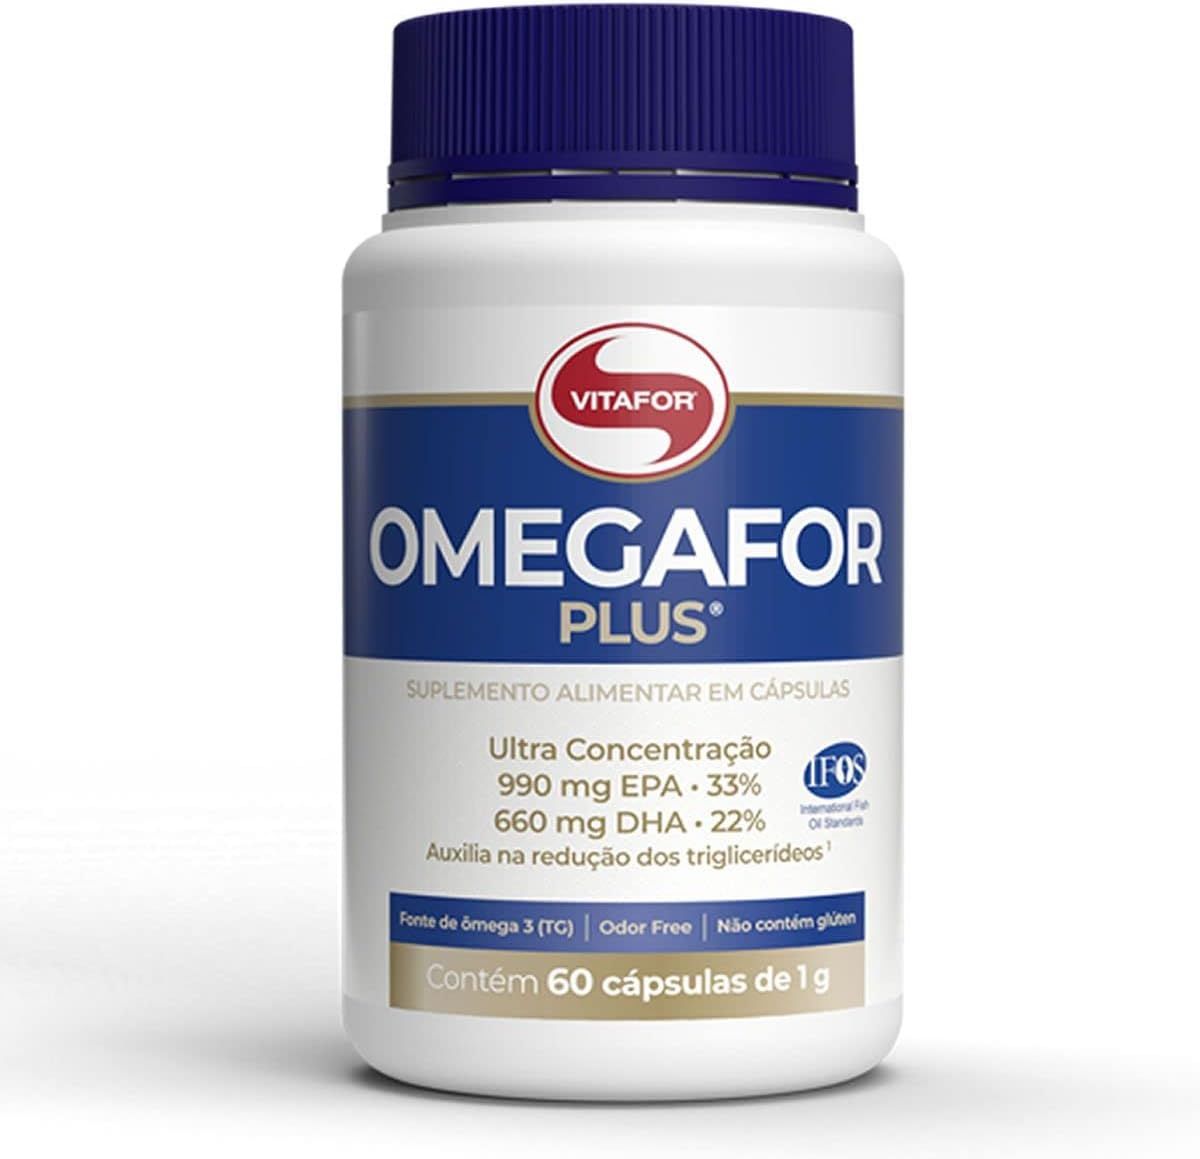 Imagem do Omegafor Plus Vitafor